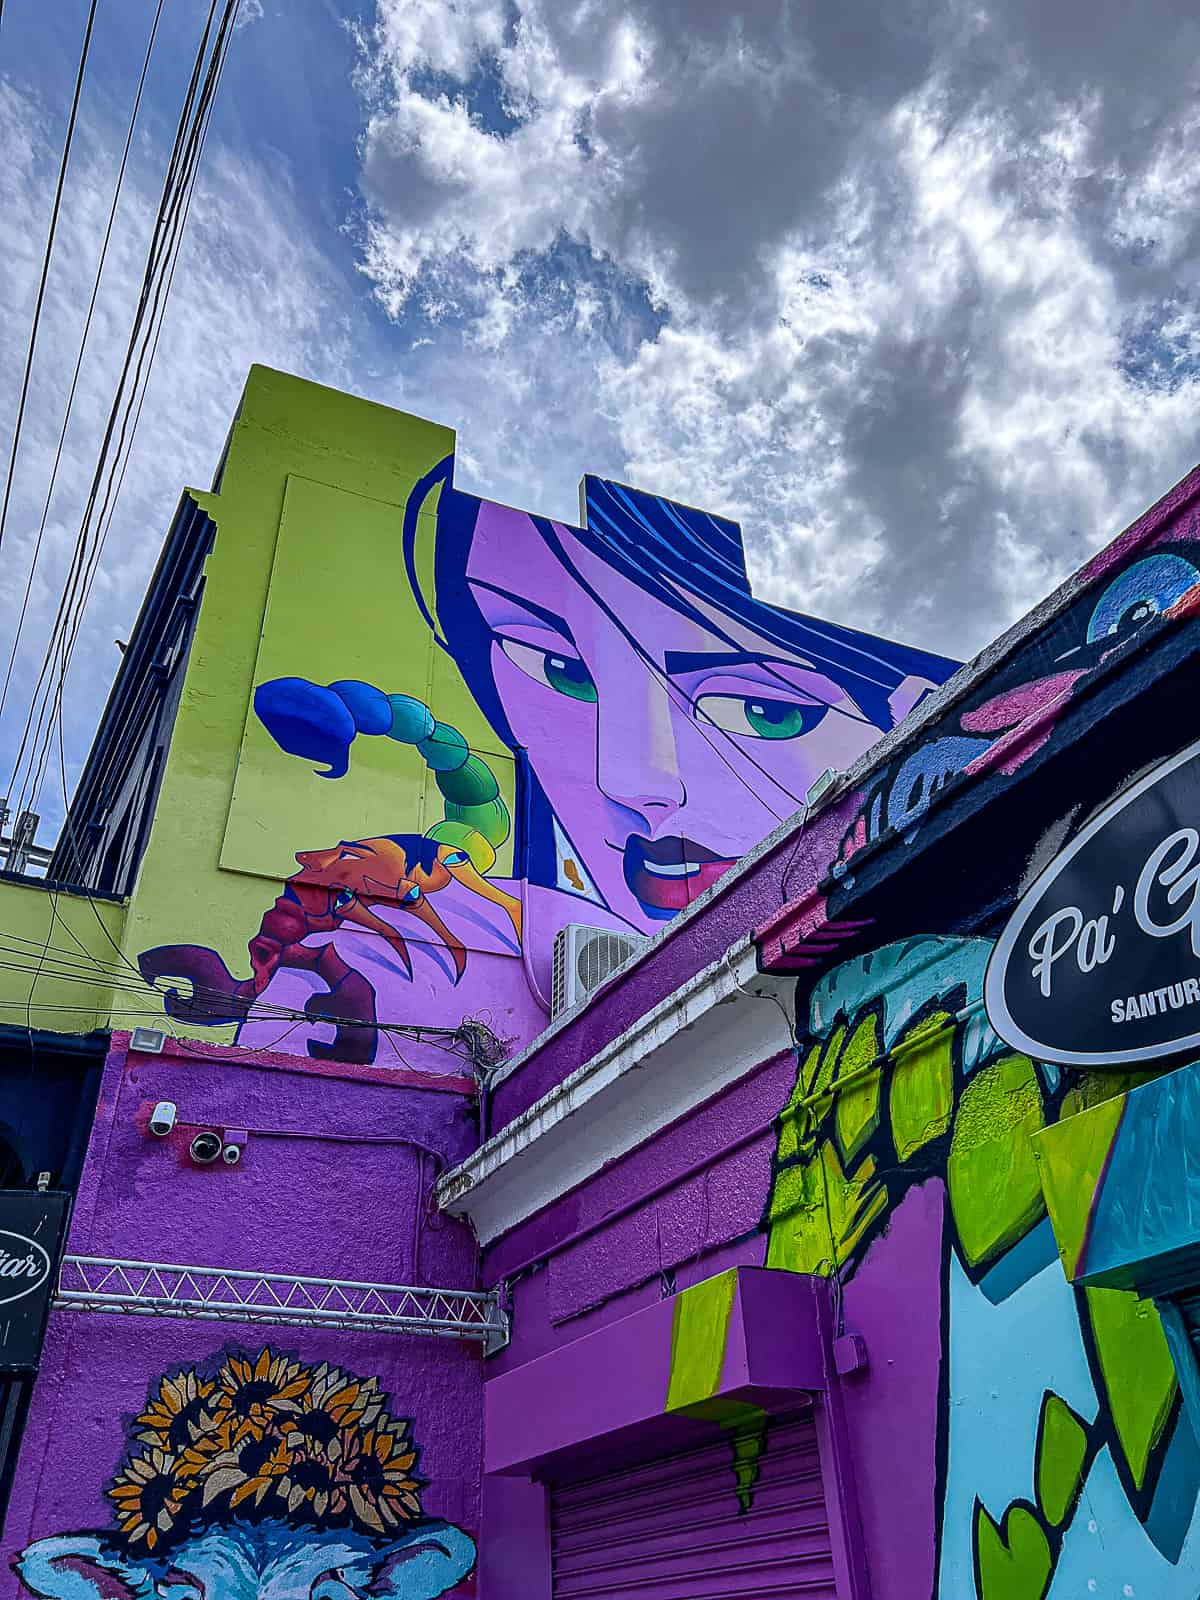 Santurce San Juan Street Art with Woman and Scorpian